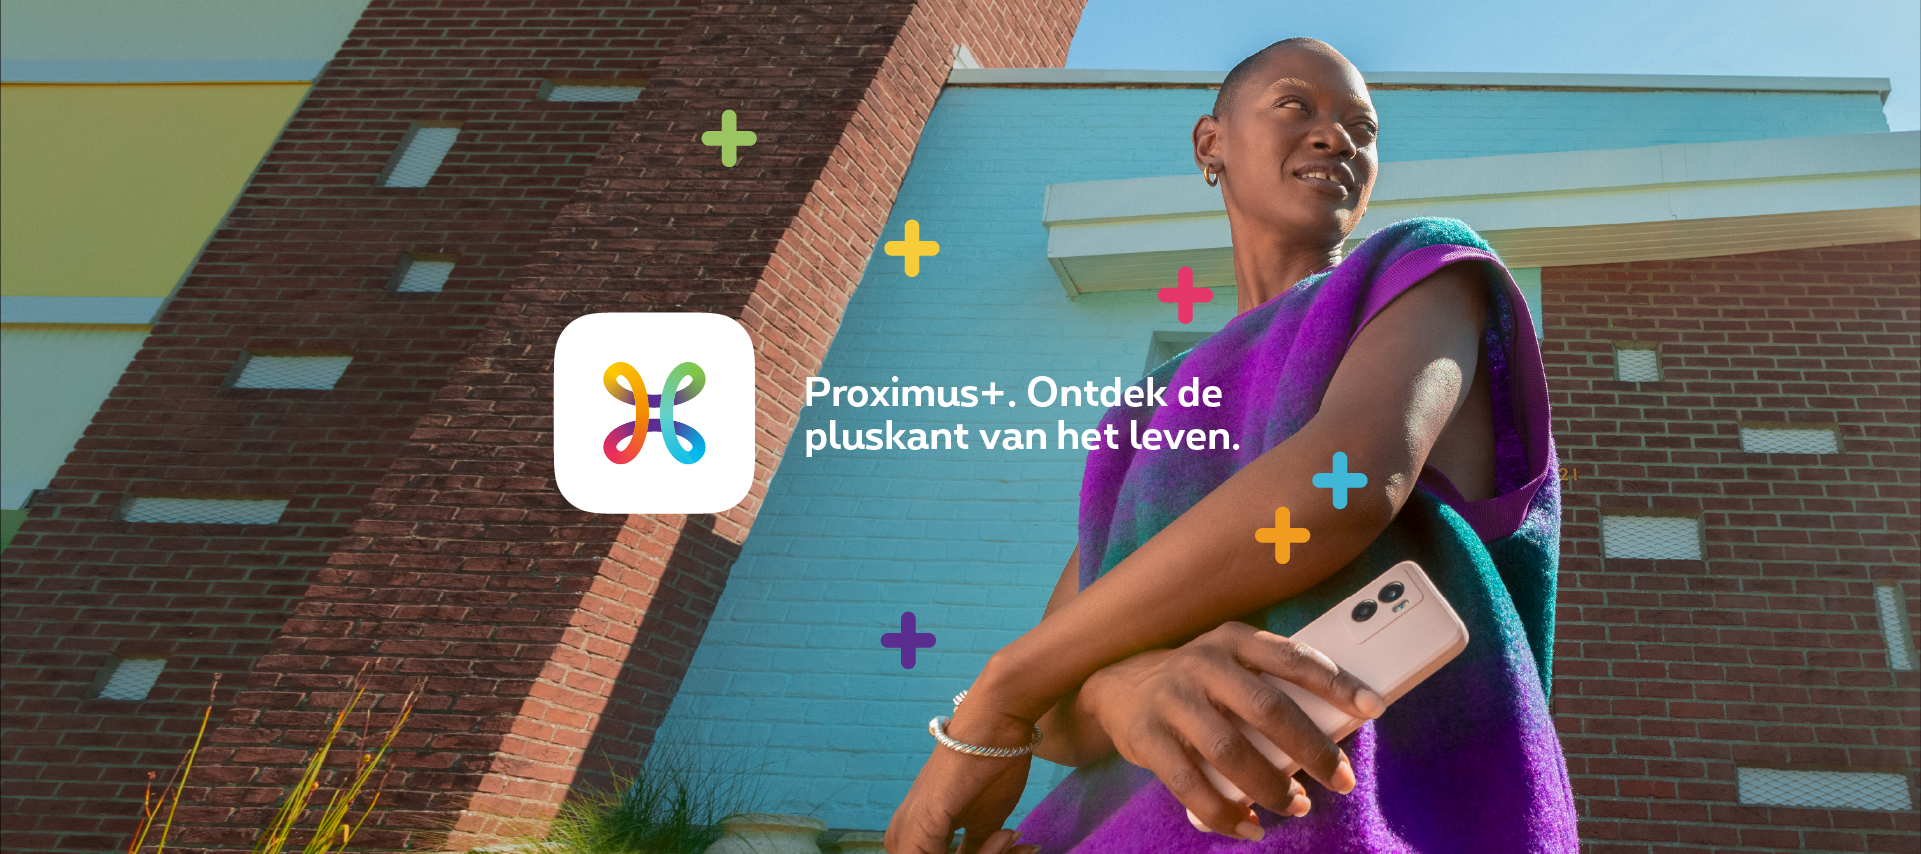 Ontdek de nieuwe Proximus+ app.